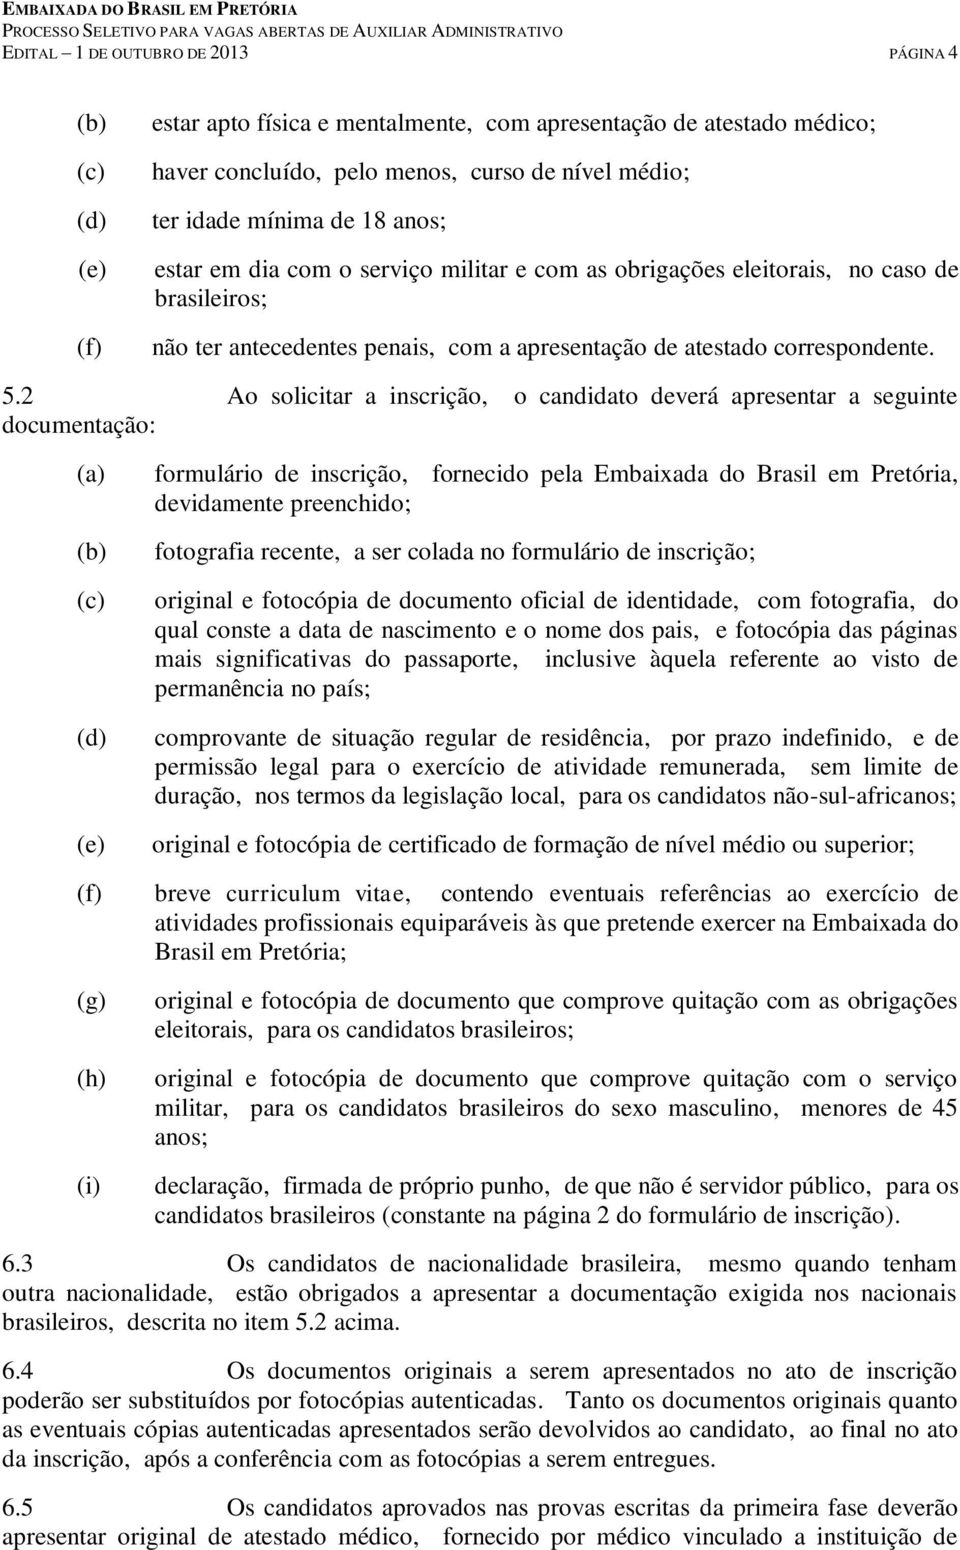 2 Ao solicitar a inscrição, o candidato deverá apresentar a seguinte documentação: (b) formulário de inscrição, fornecido pela Embaixada do Brasil em Pretória, devidamente preenchido; fotografia